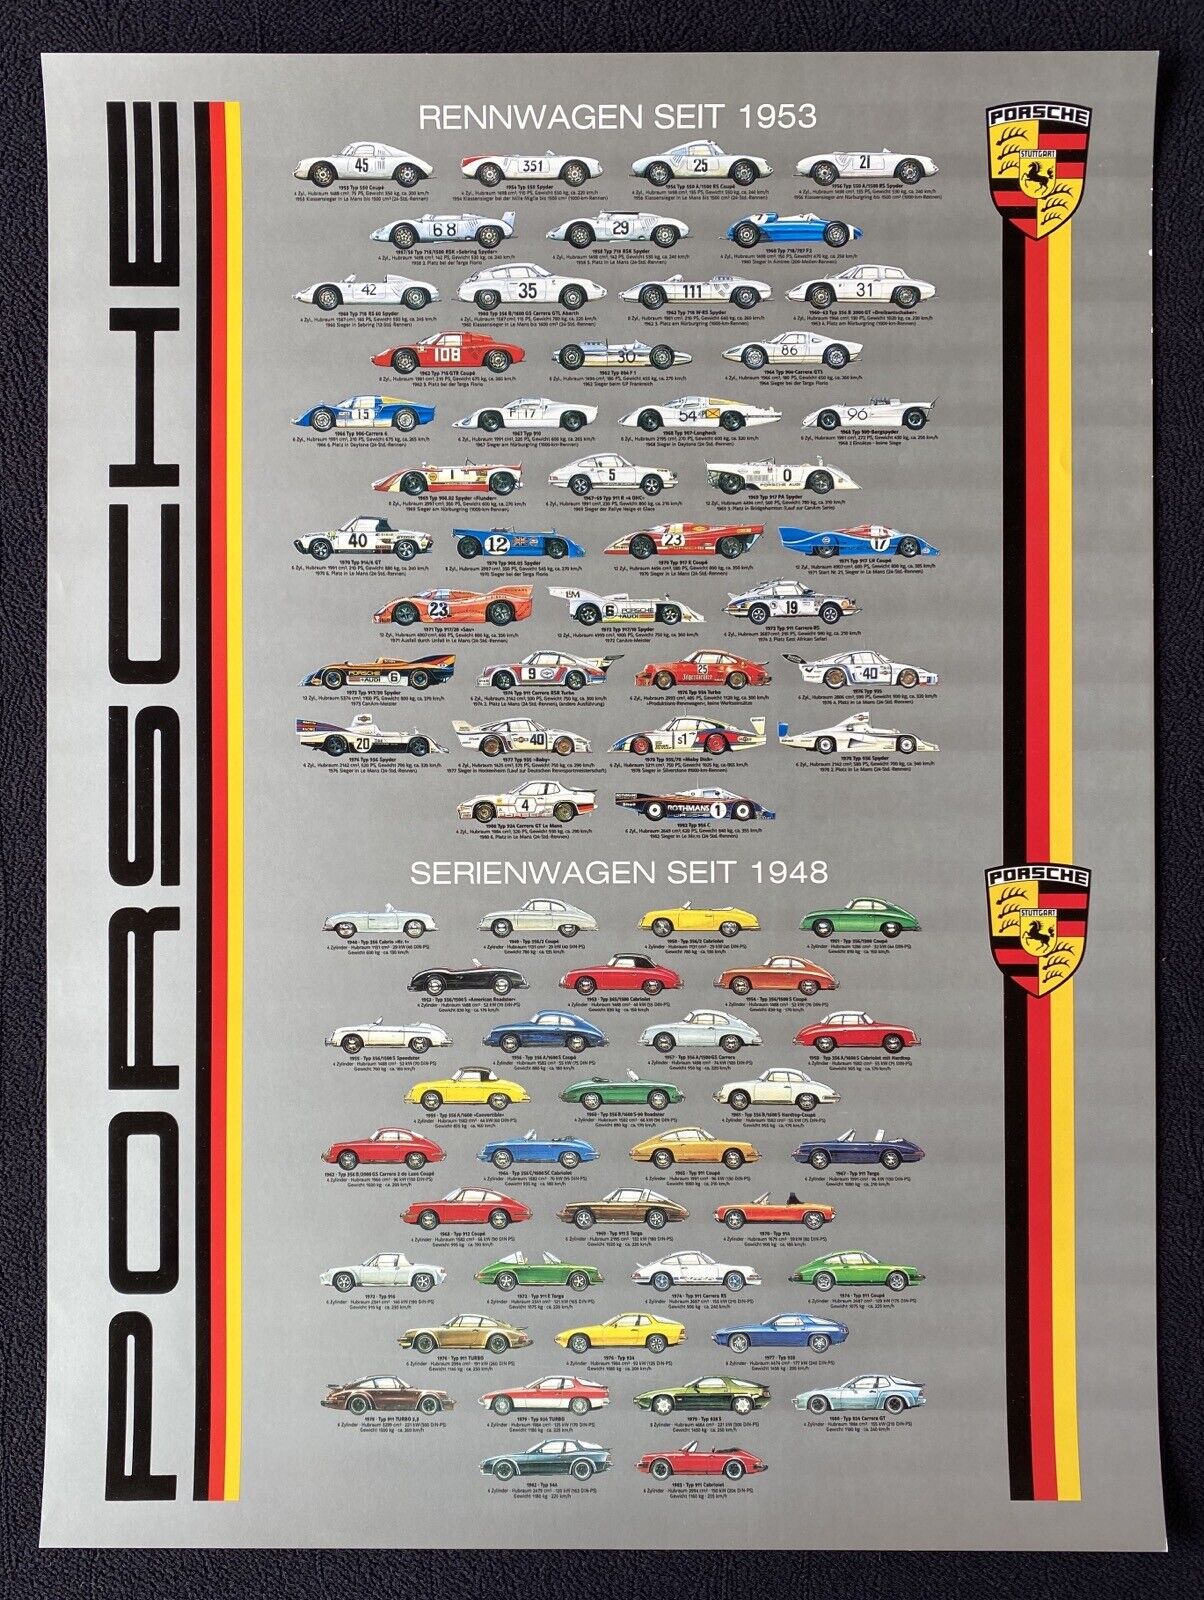 1983 PORSCHE Rennwagen Seit 1953 Serienwagen Seit 1948 Poster 911 917 356 718RSK